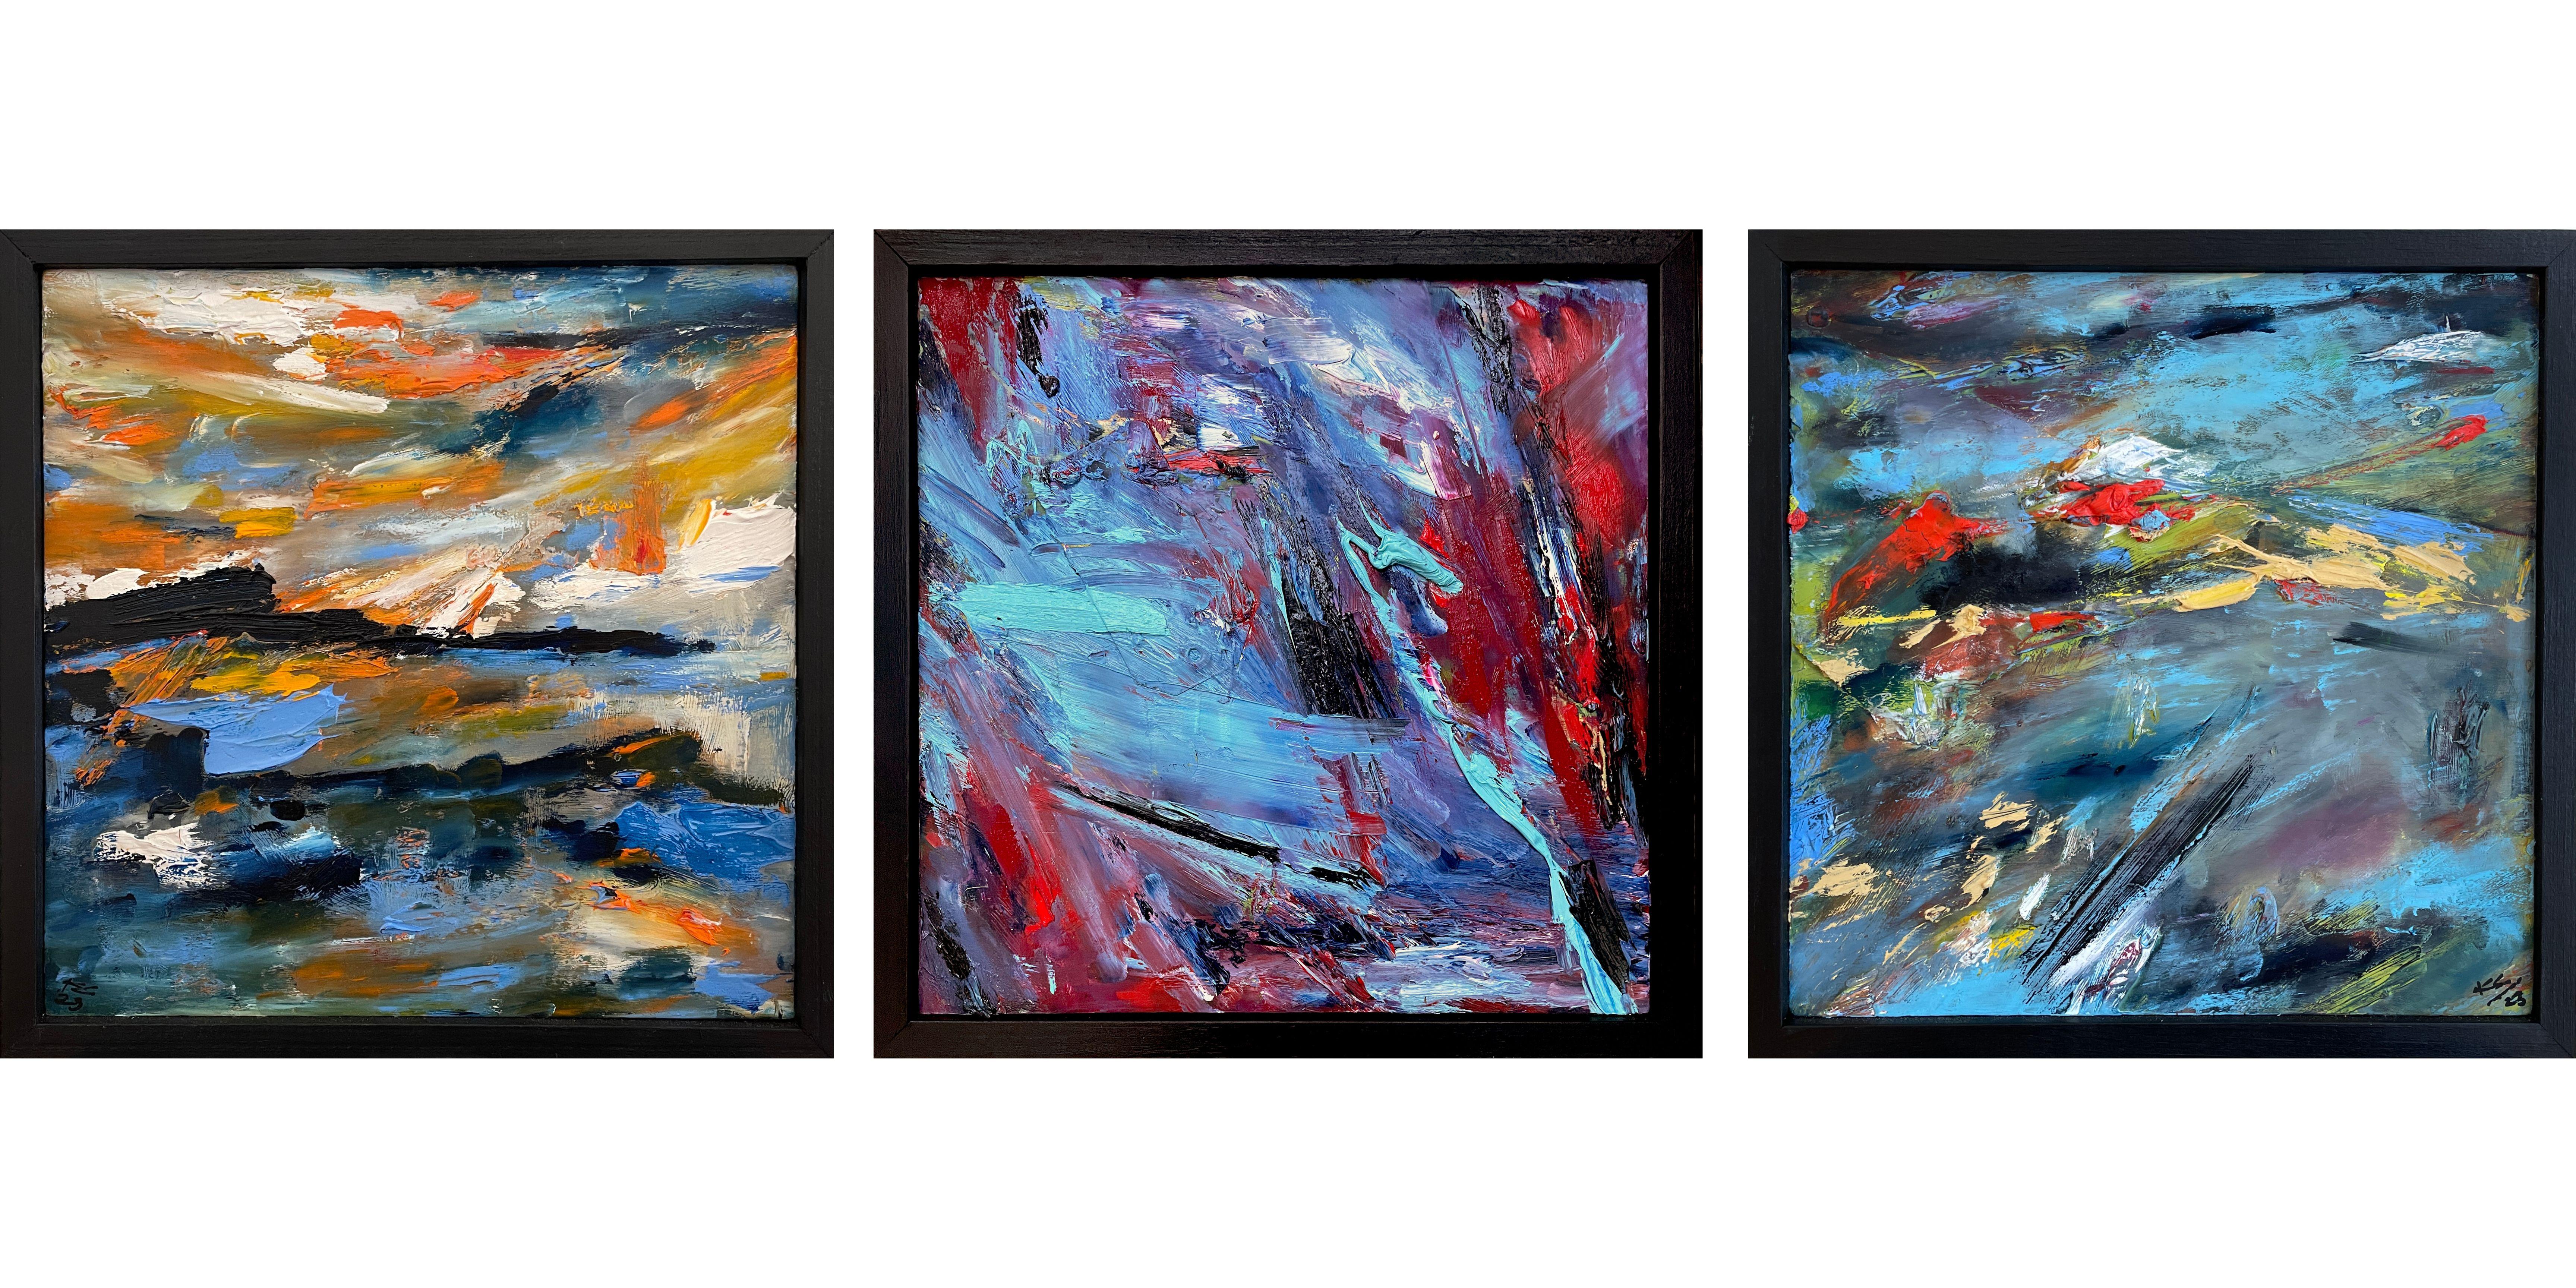 In diesem 12" x 36" großen abstrakten expressionistischen Triptychon fängt die Künstlerin Kristy Chettle die lebendige Essenz der vielfältigen Landschaften der Monterey Bay ein. Die Tafeln sind eine Sinfonie der Farben: Cerulean- und Saphirblau, die